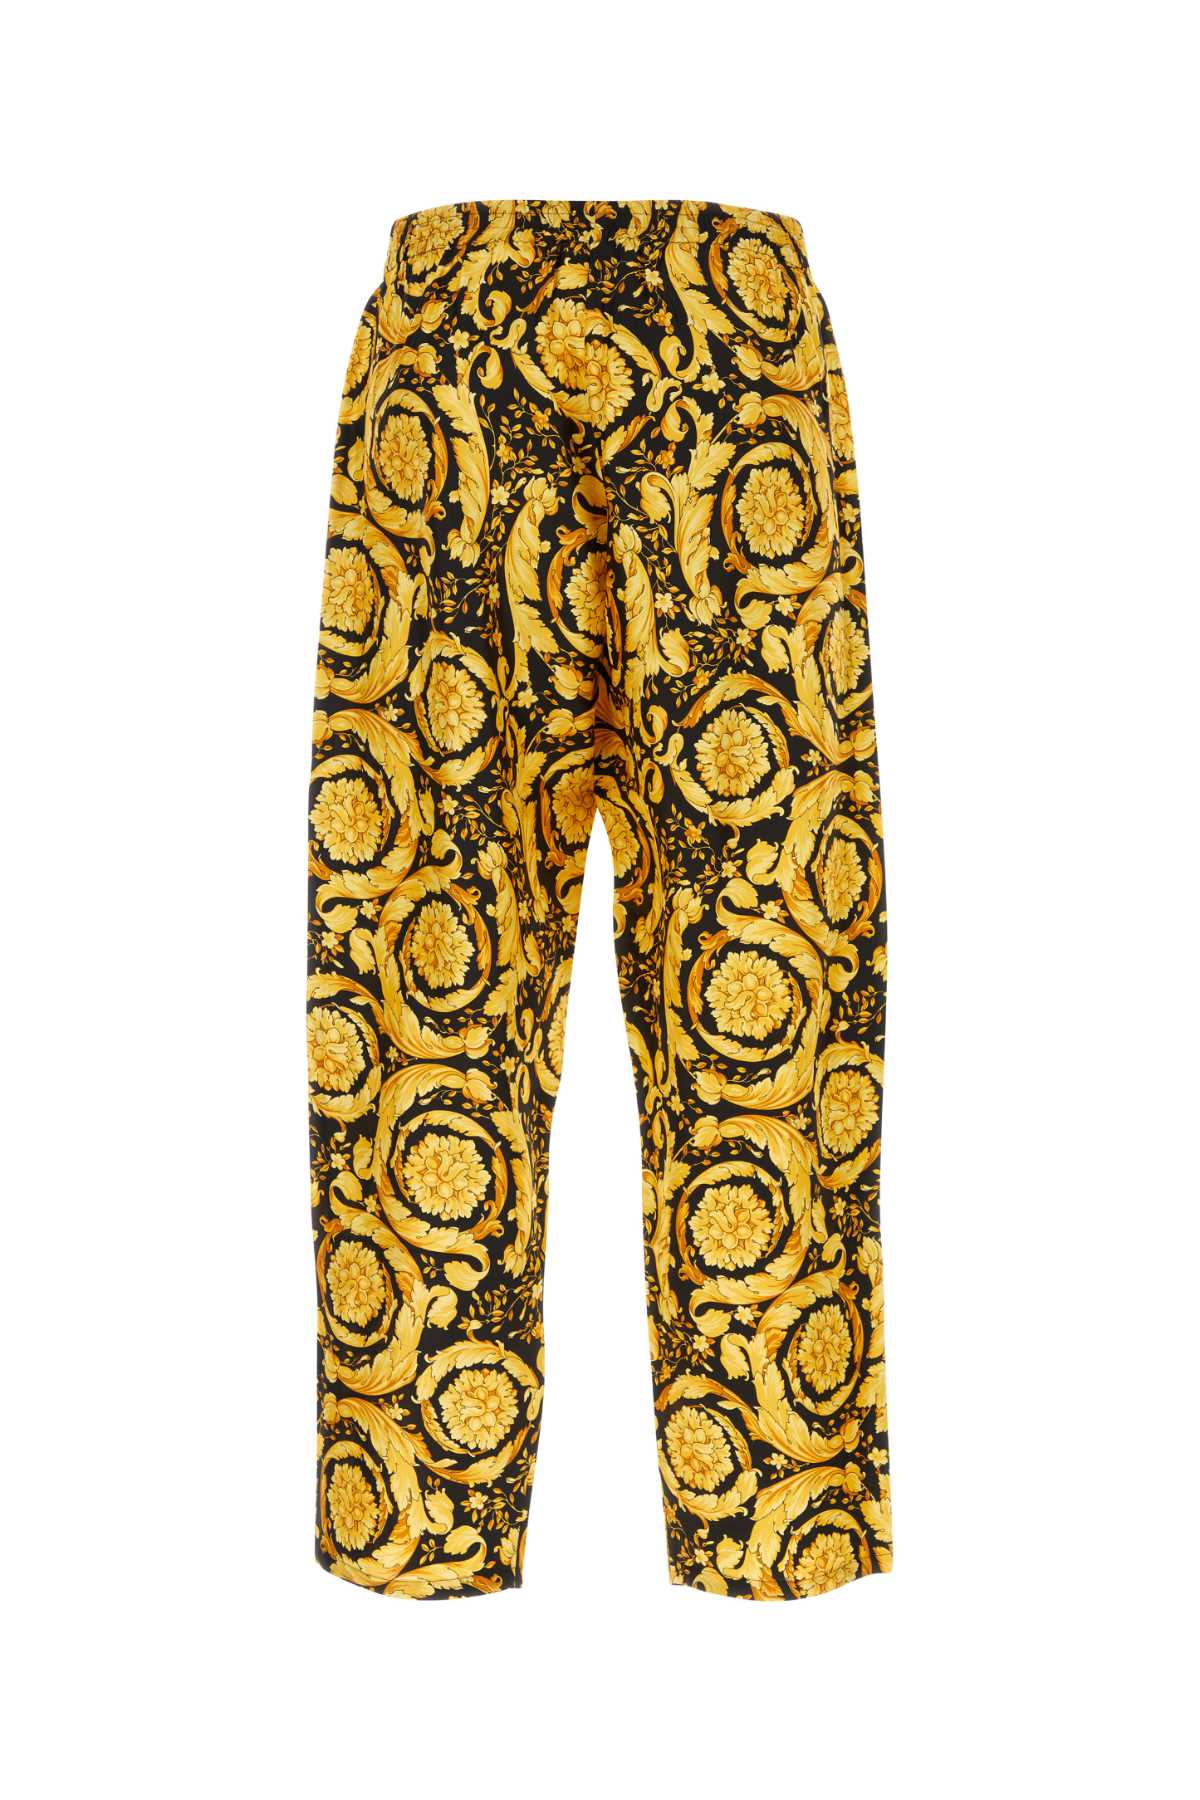 Shop Versace Printed Satin Pijama Pant In Nerooro